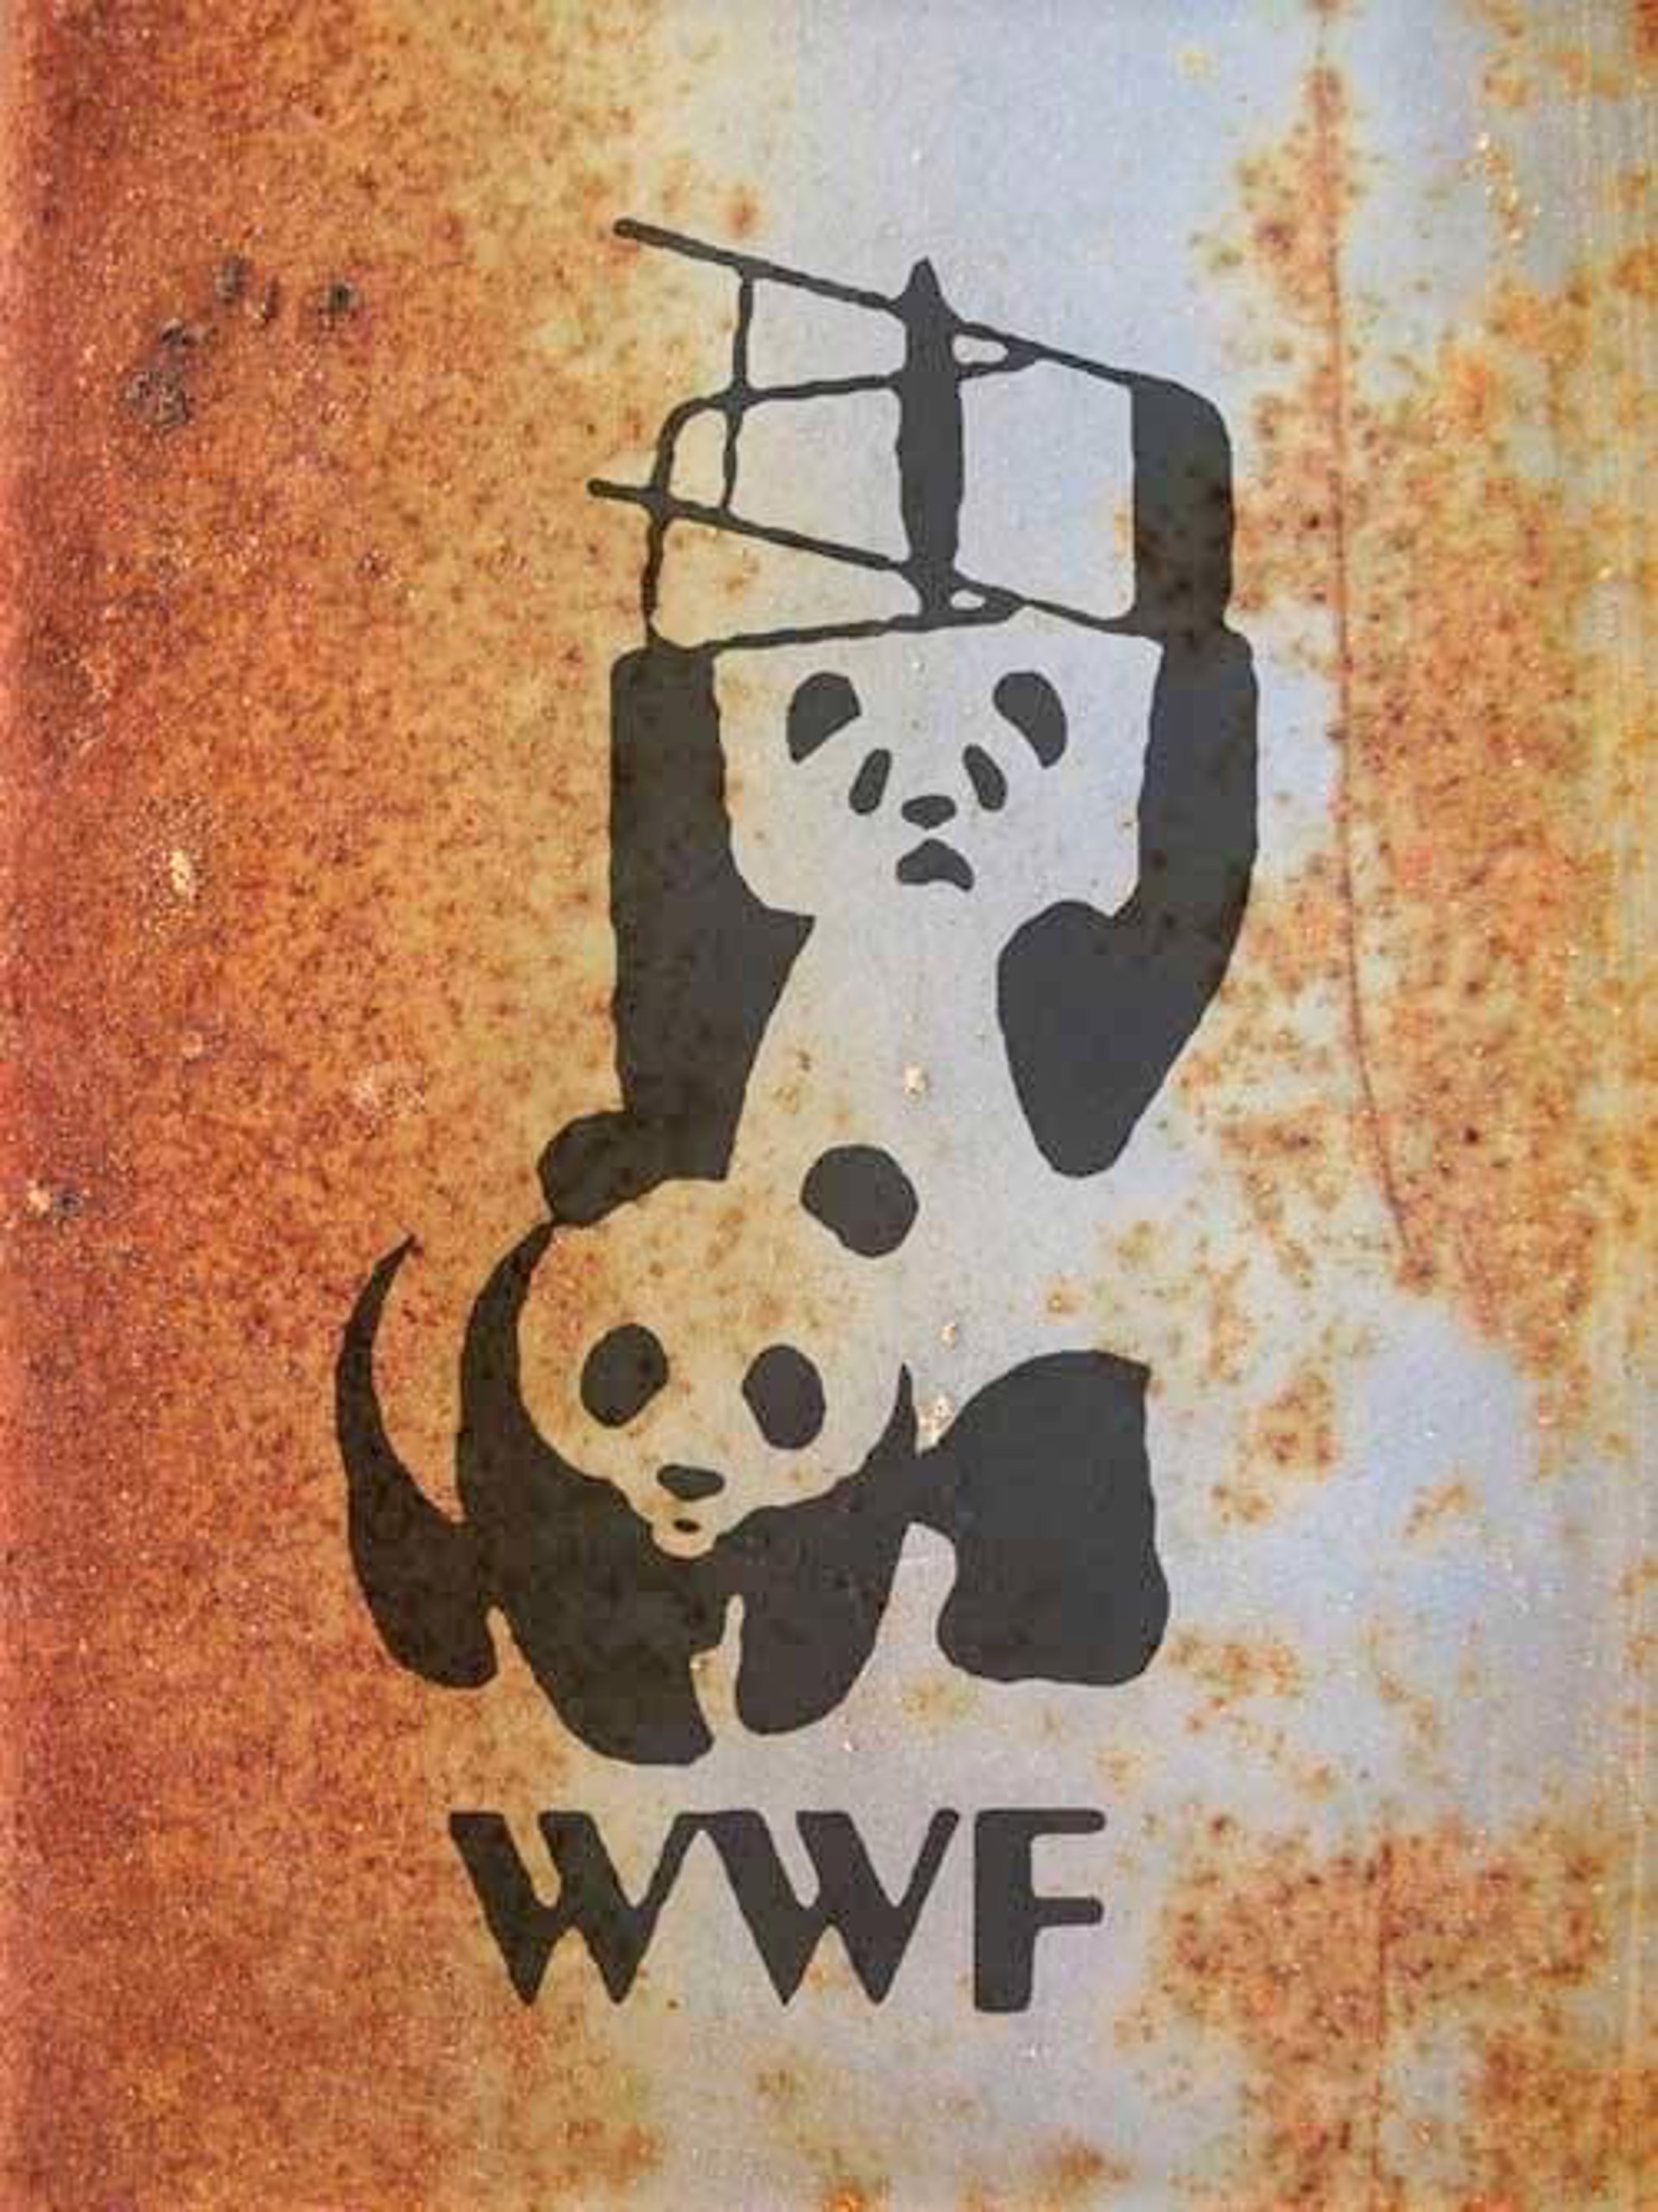 WWF Pandas by Banksy